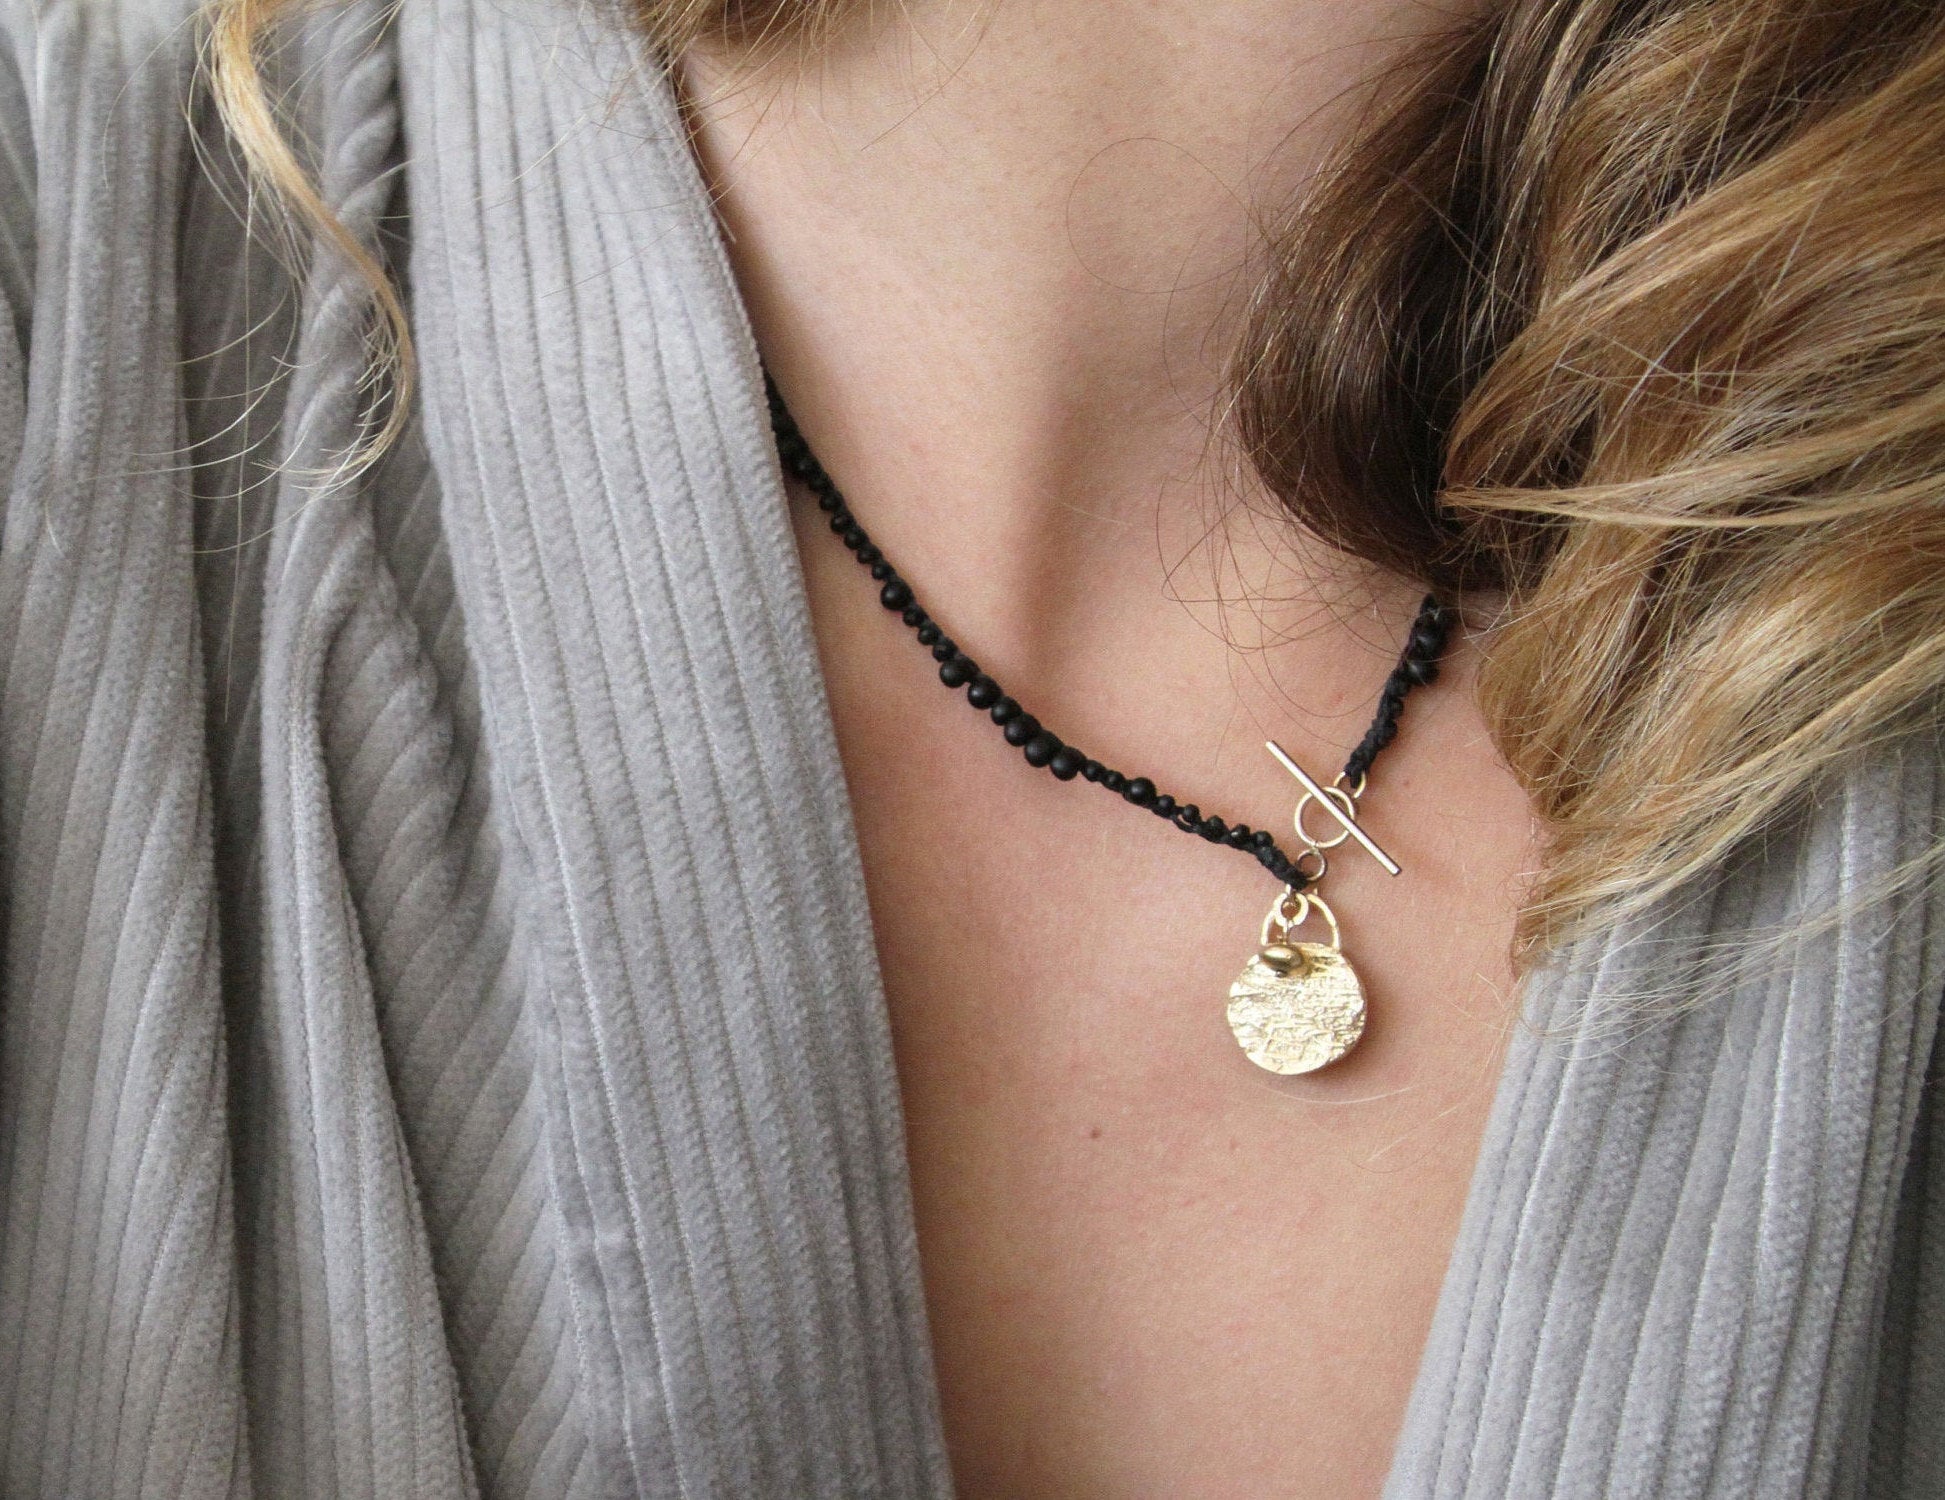 ALDO black Druzy statement necklace | eBay